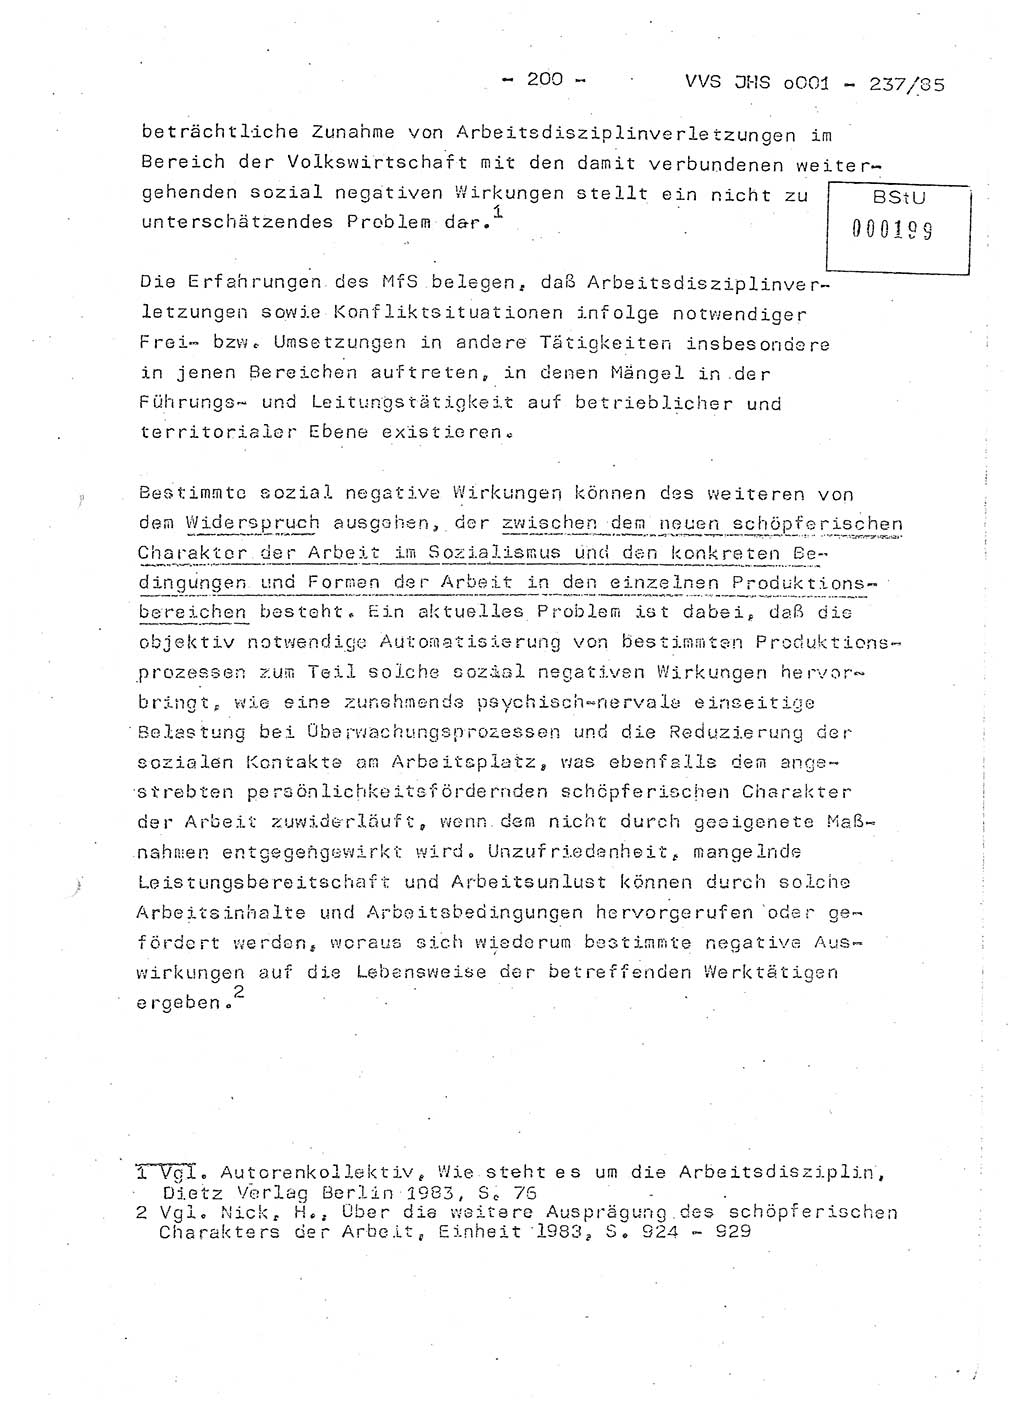 Dissertation Oberstleutnant Peter Jakulski (JHS), Oberstleutnat Christian Rudolph (HA Ⅸ), Major Horst Böttger (ZMD), Major Wolfgang Grüneberg (JHS), Major Albert Meutsch (JHS), Ministerium für Staatssicherheit (MfS) [Deutsche Demokratische Republik (DDR)], Juristische Hochschule (JHS), Vertrauliche Verschlußsache (VVS) o001-237/85, Potsdam 1985, Seite 200 (Diss. MfS DDR JHS VVS o001-237/85 1985, S. 200)